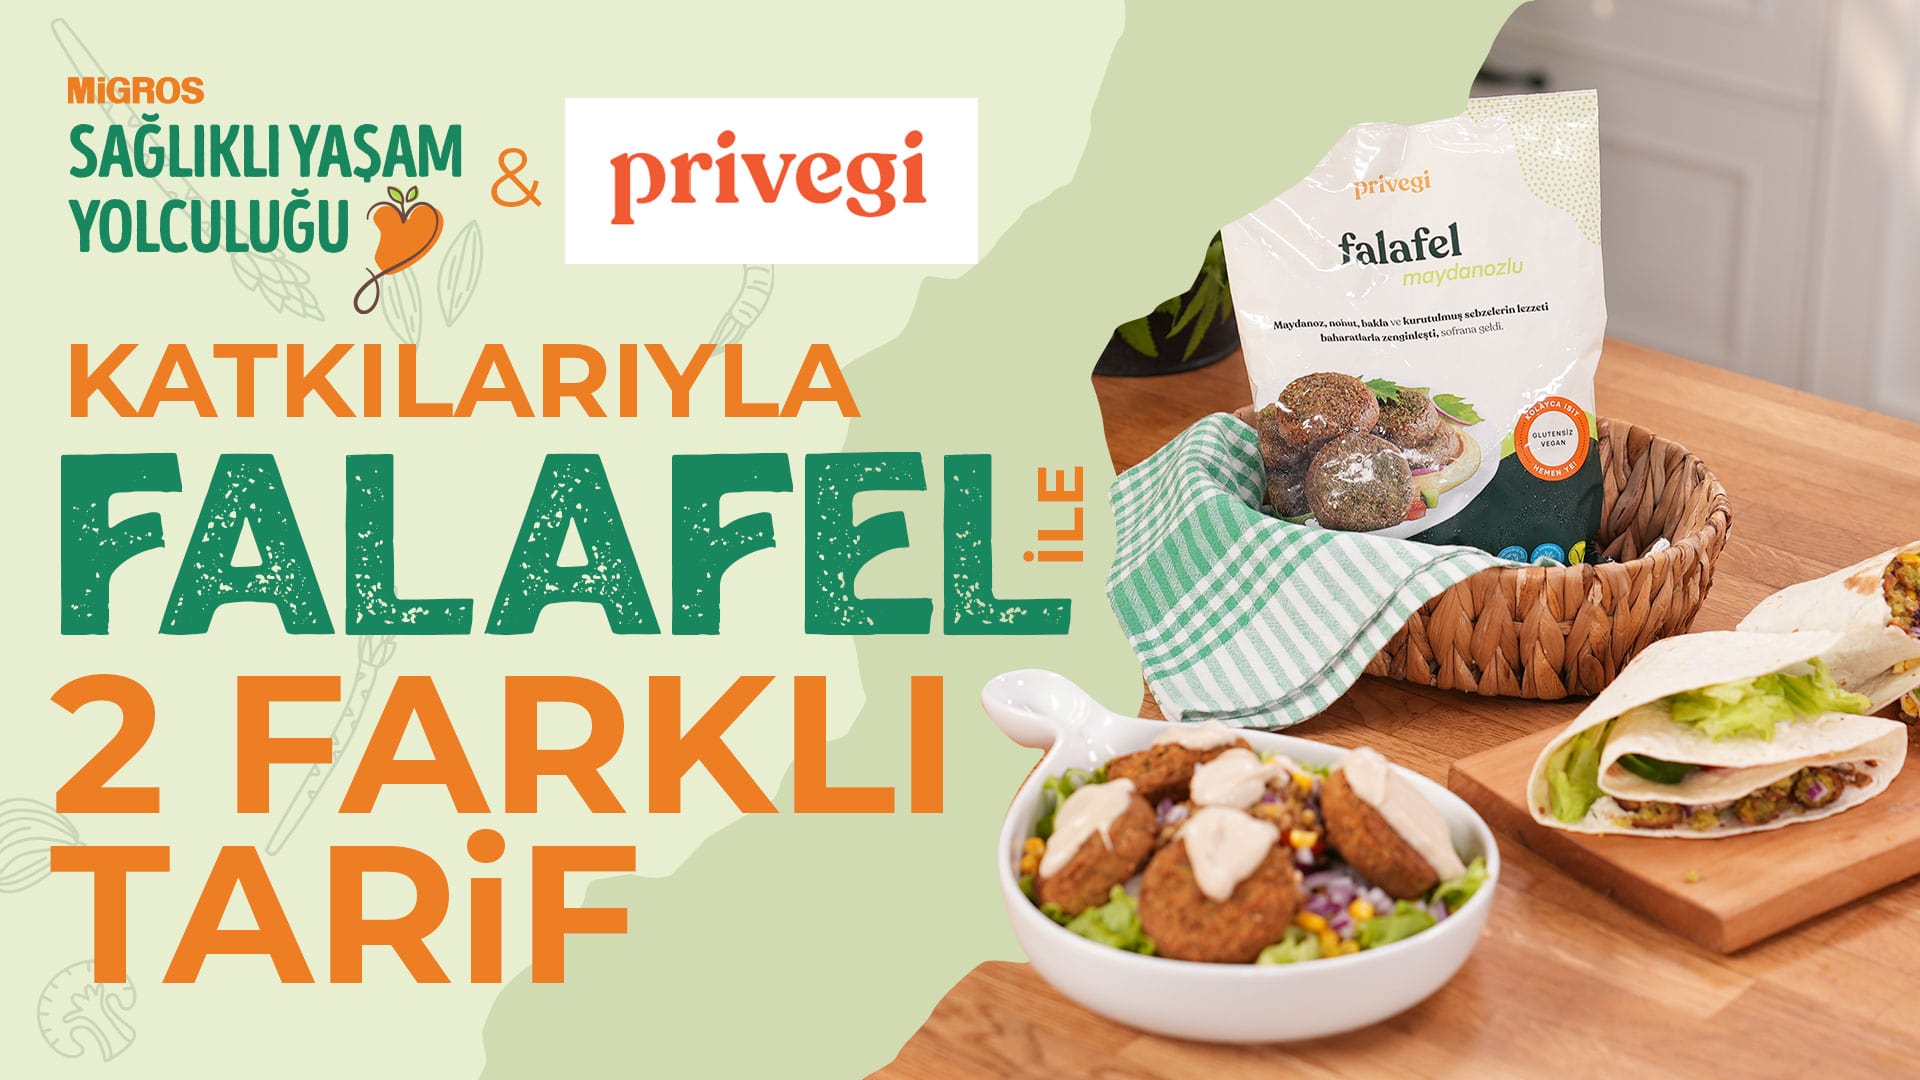 Privegi Falafel Sandviç ve Falafel Salata Tarifi – Migros Sağlıklı Yaşam Yolculuğu